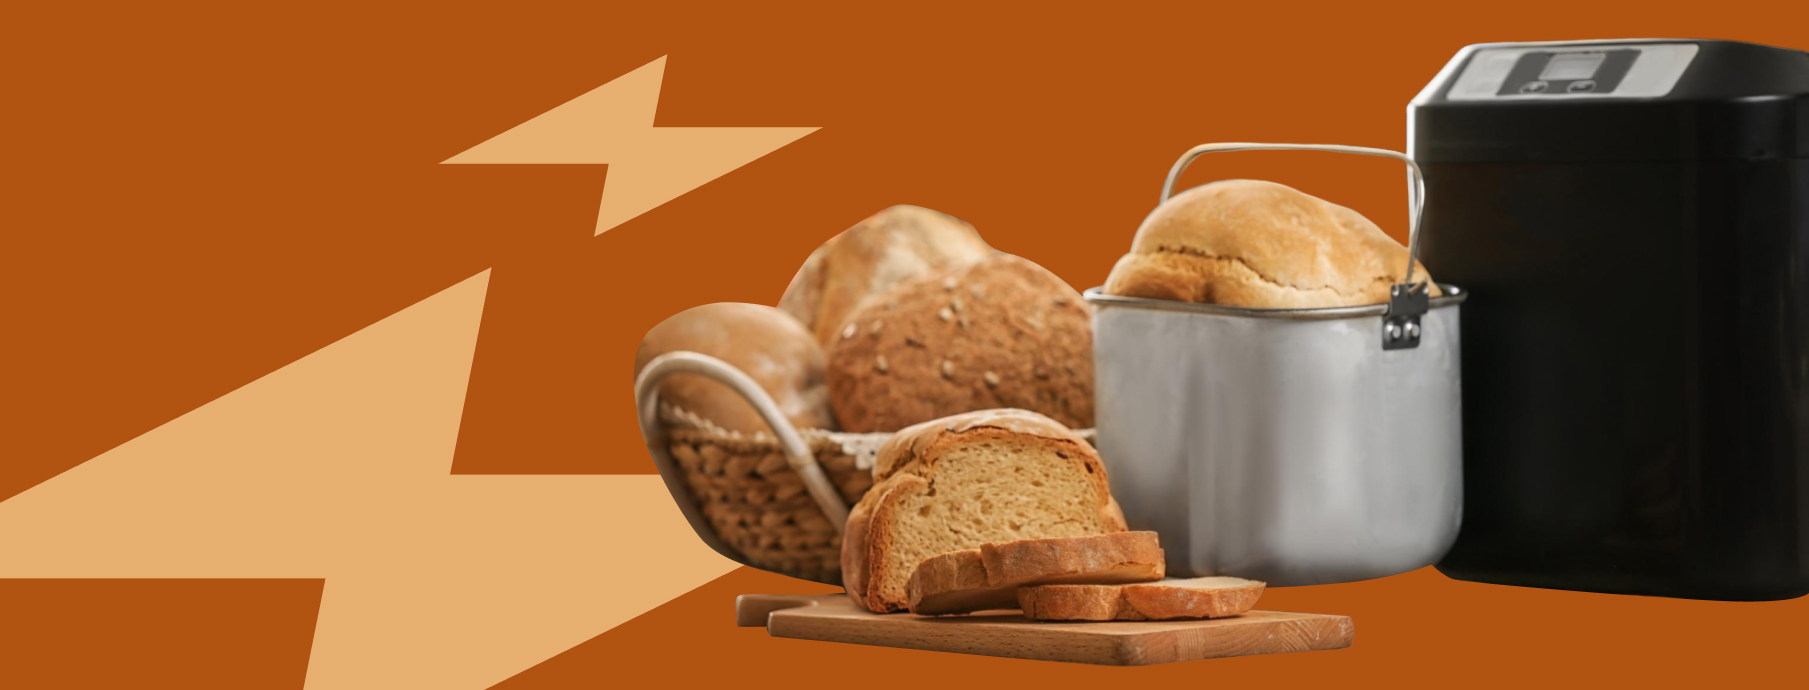 Как приготовить хлеб в мультиварке с полезными добавками